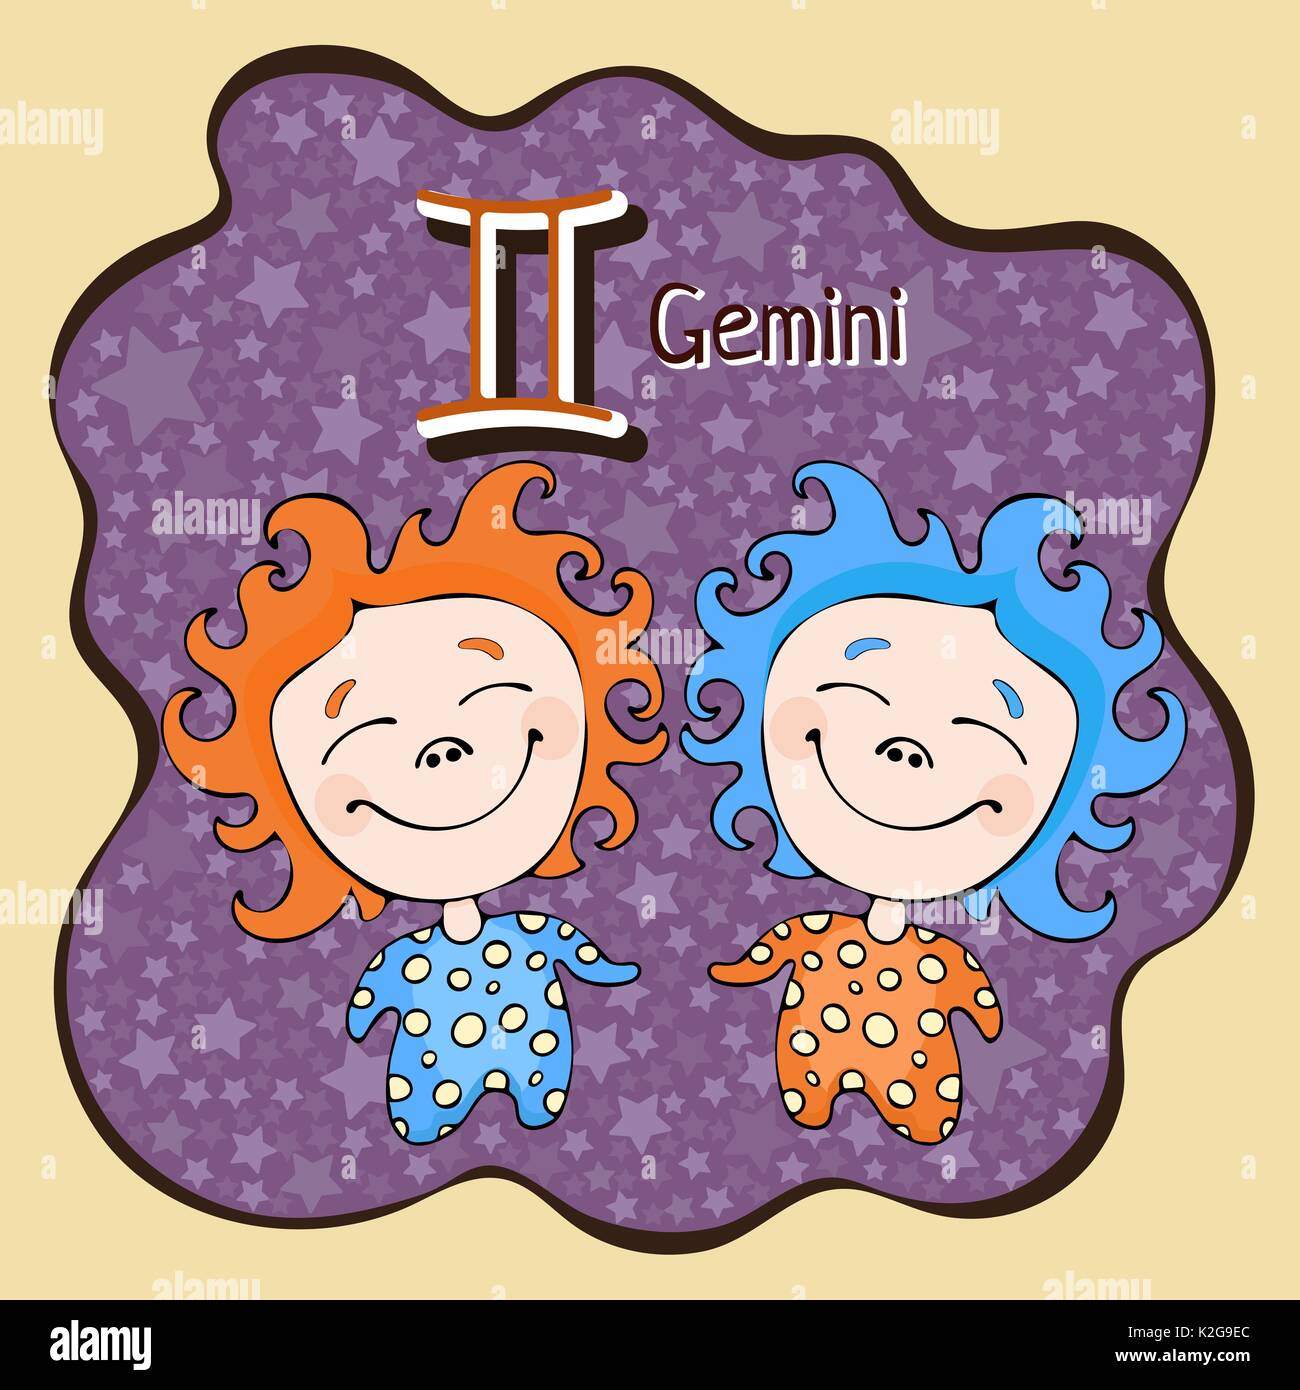 Segno zodiacale cartoon Gemini, carattere astrologico, disegno a mano. Dipinto funny gemini nel telaio sotto forma di una definizione astratta viola macchia di inchiostro con ba Illustrazione Vettoriale